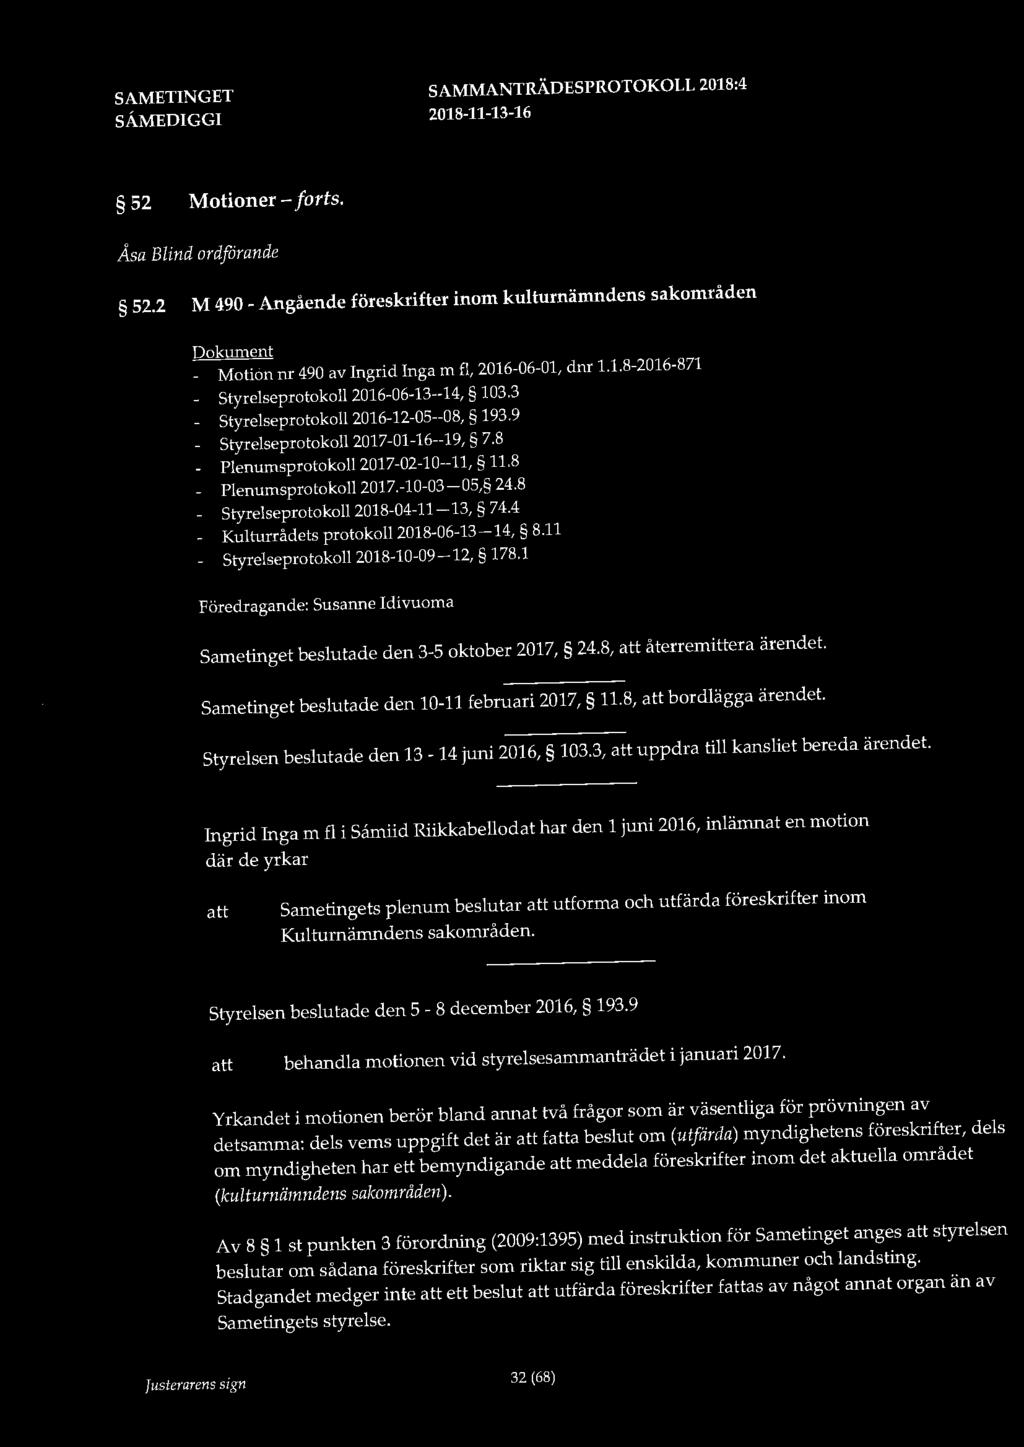 52 Motioner - forts. Åsa Blind ordförande 52.2 M 490 - Angående föreskrifter inom kulturnämndens sakområden Dokument - Motion nr 490 av Ingrid Inga m fl, 2016